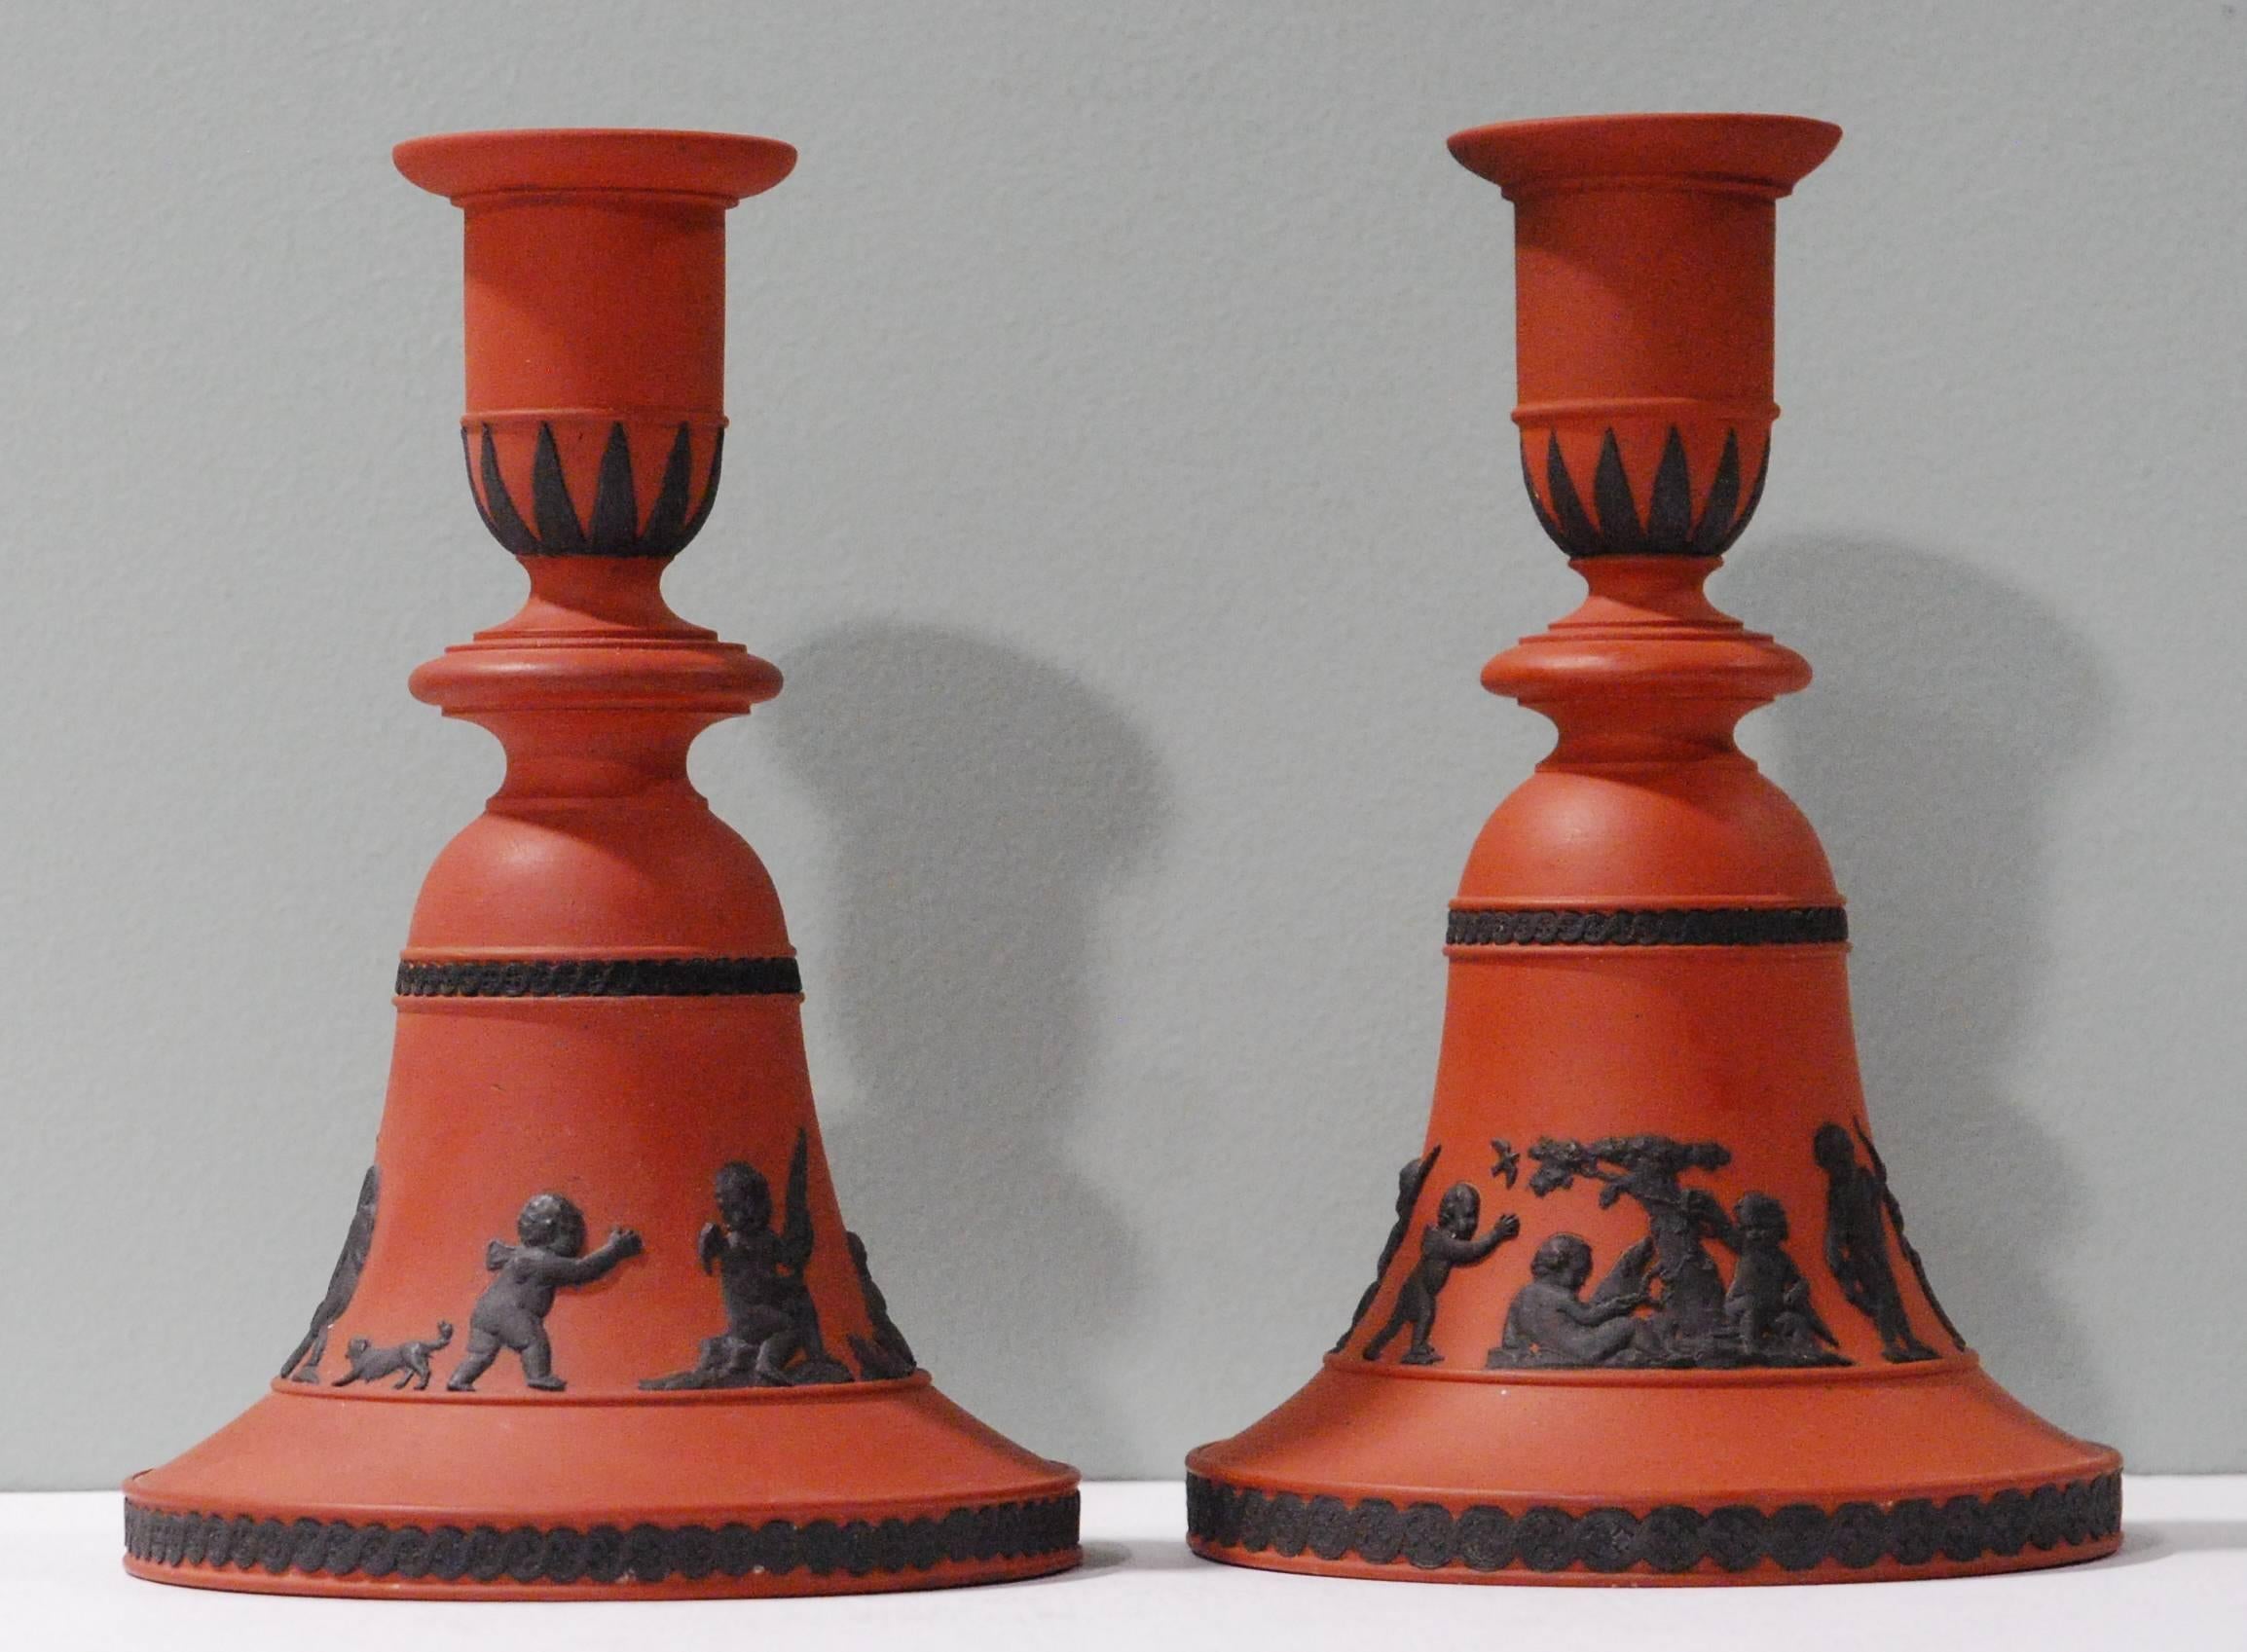 Une paire rare de chandeliers en forme de cloche en rosso antico, avec une décoration noire de 'Boys at Play'.